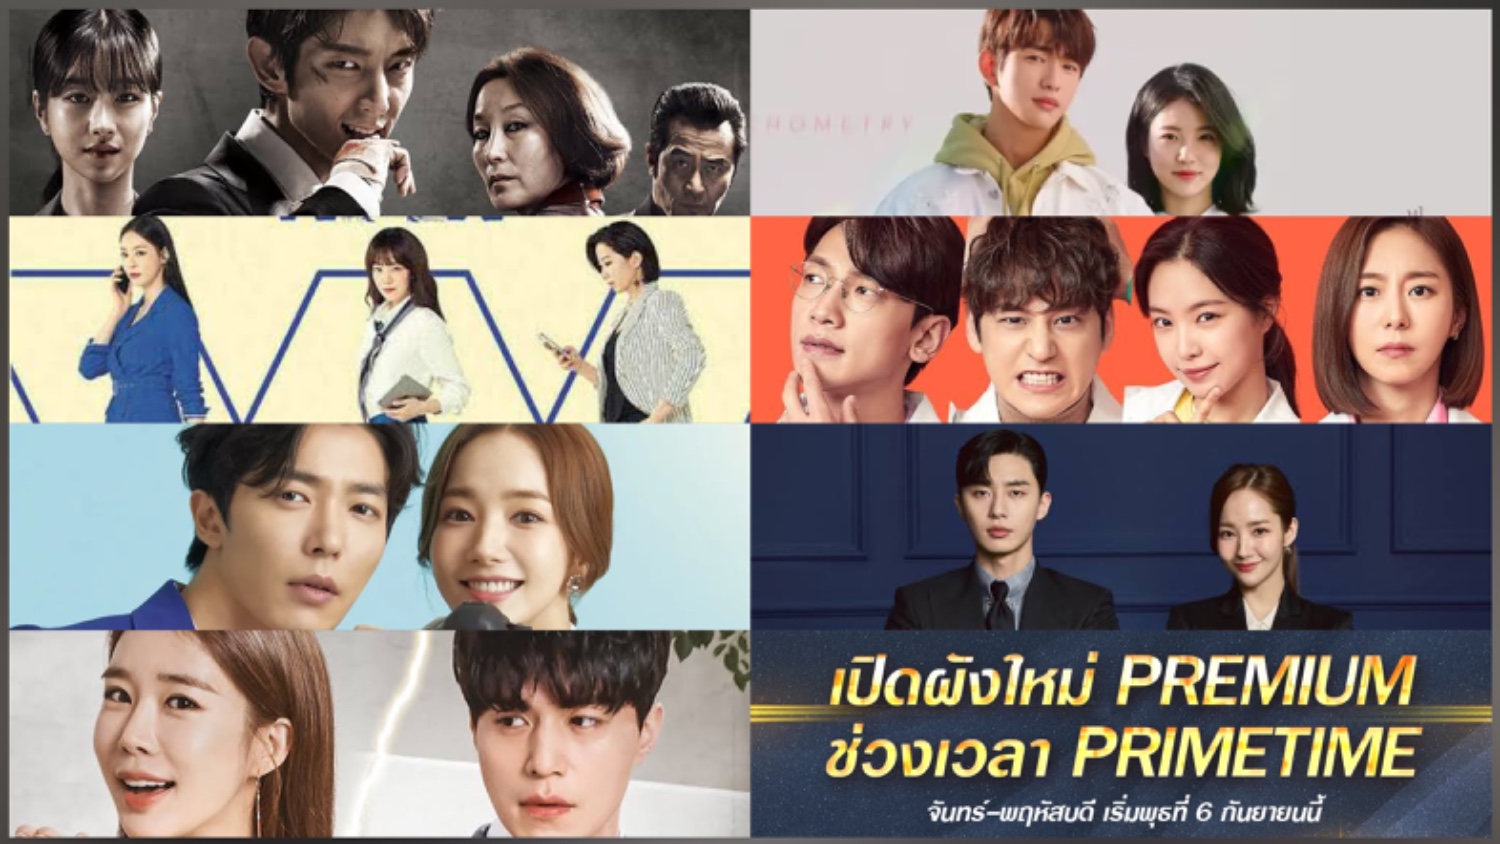 ยกทัพซีรีส์เกาหลี 7 เรื่อง 🇰🇷 จ่อคิวออนแอร์ช่วง Premium Primetime เวลา  21.30 น. ทุกวันจันทร์-พฤหัสบดี ช่อง 7Hd - Pantip